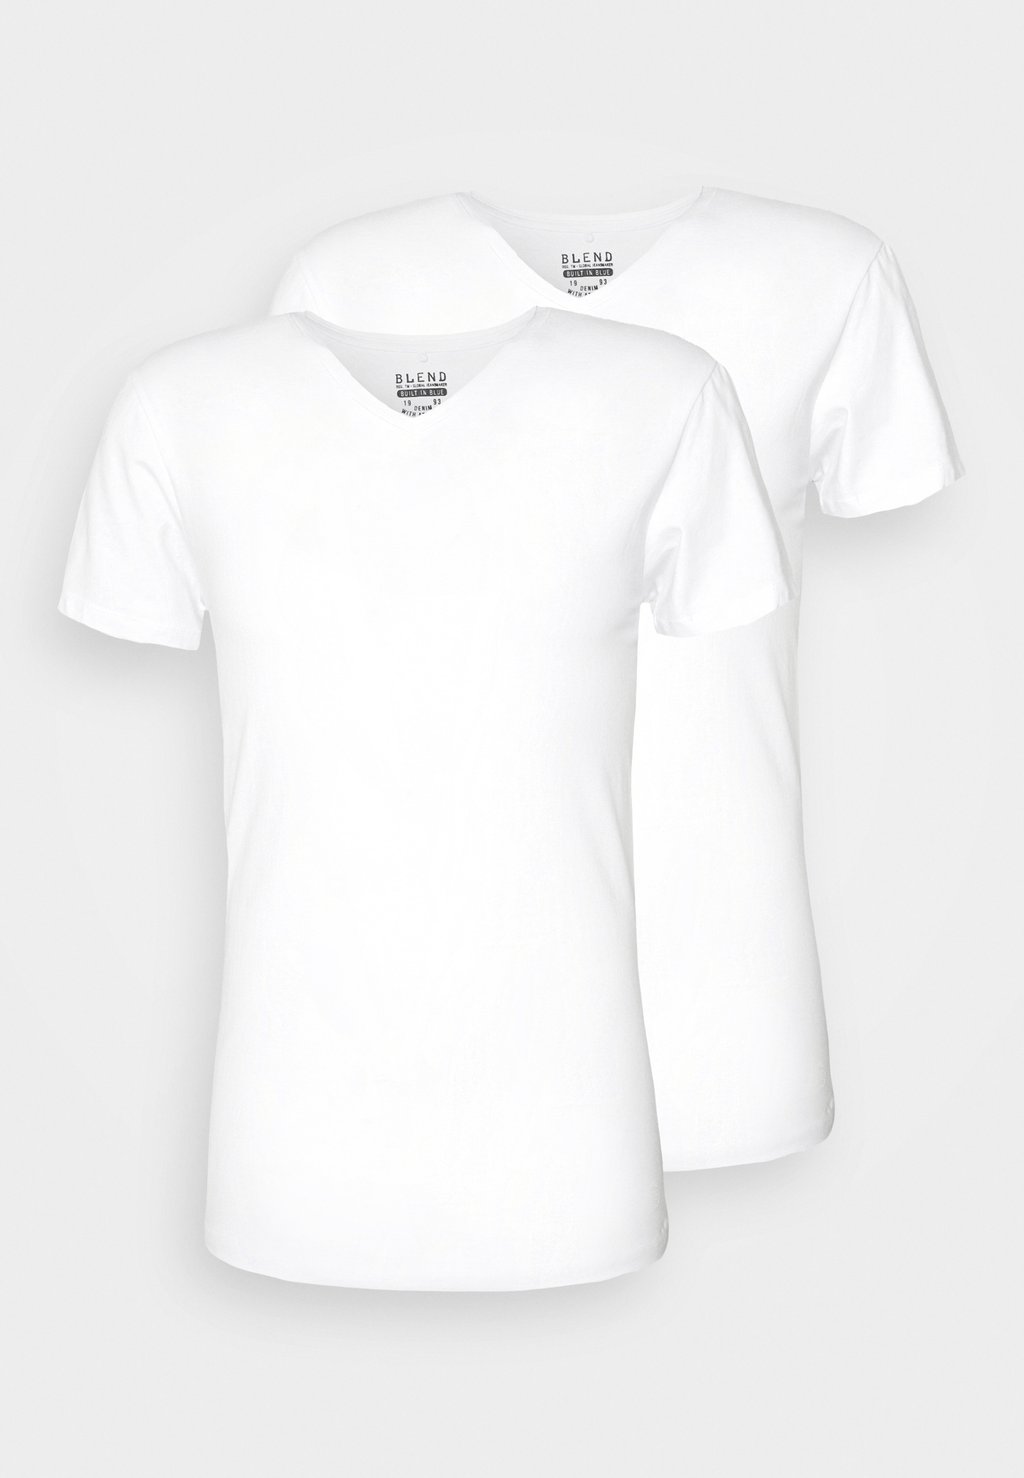 Базовая футболка Bhbhdinton V Blend, белый